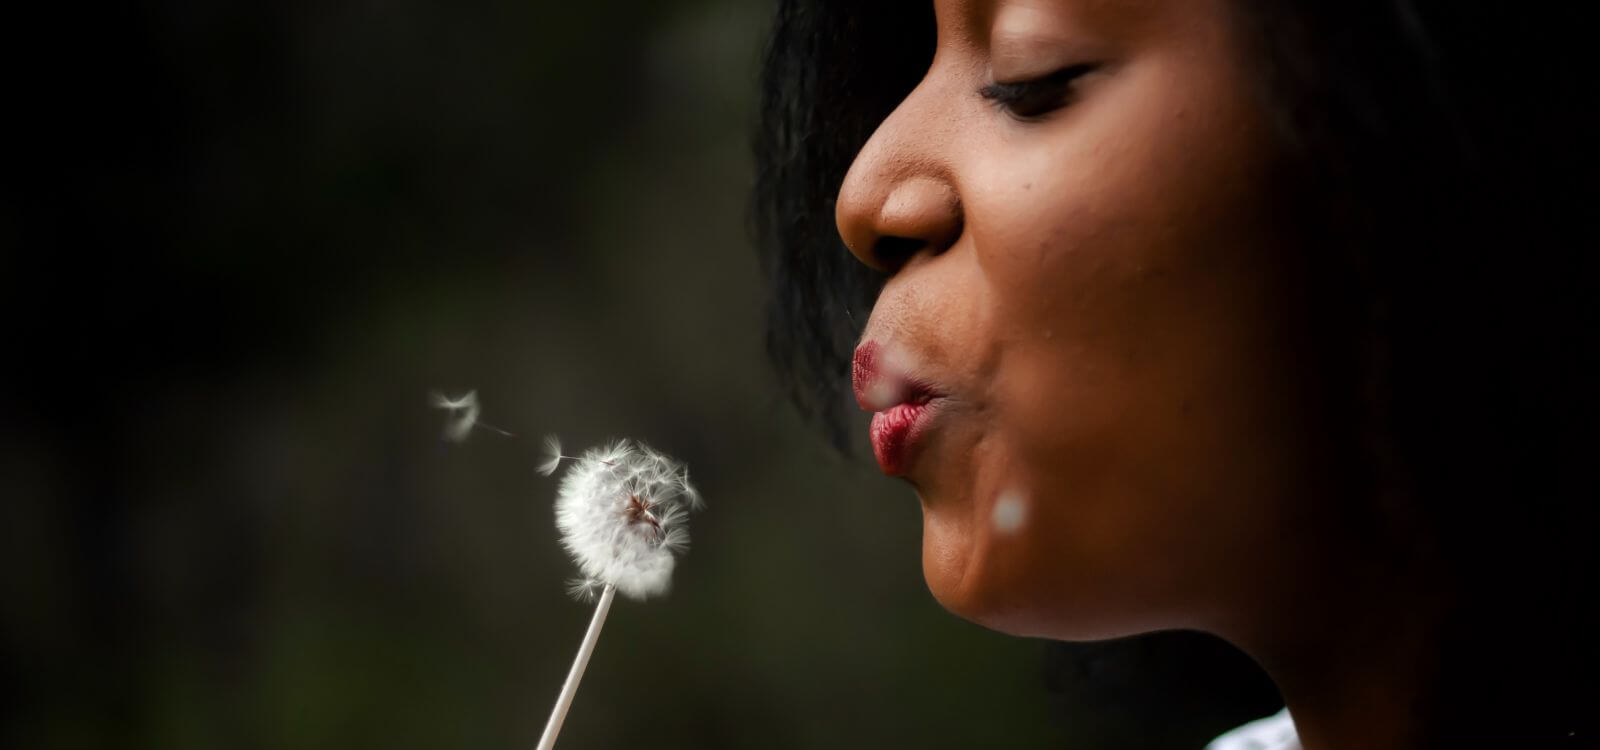 Woman blowing a dandelion